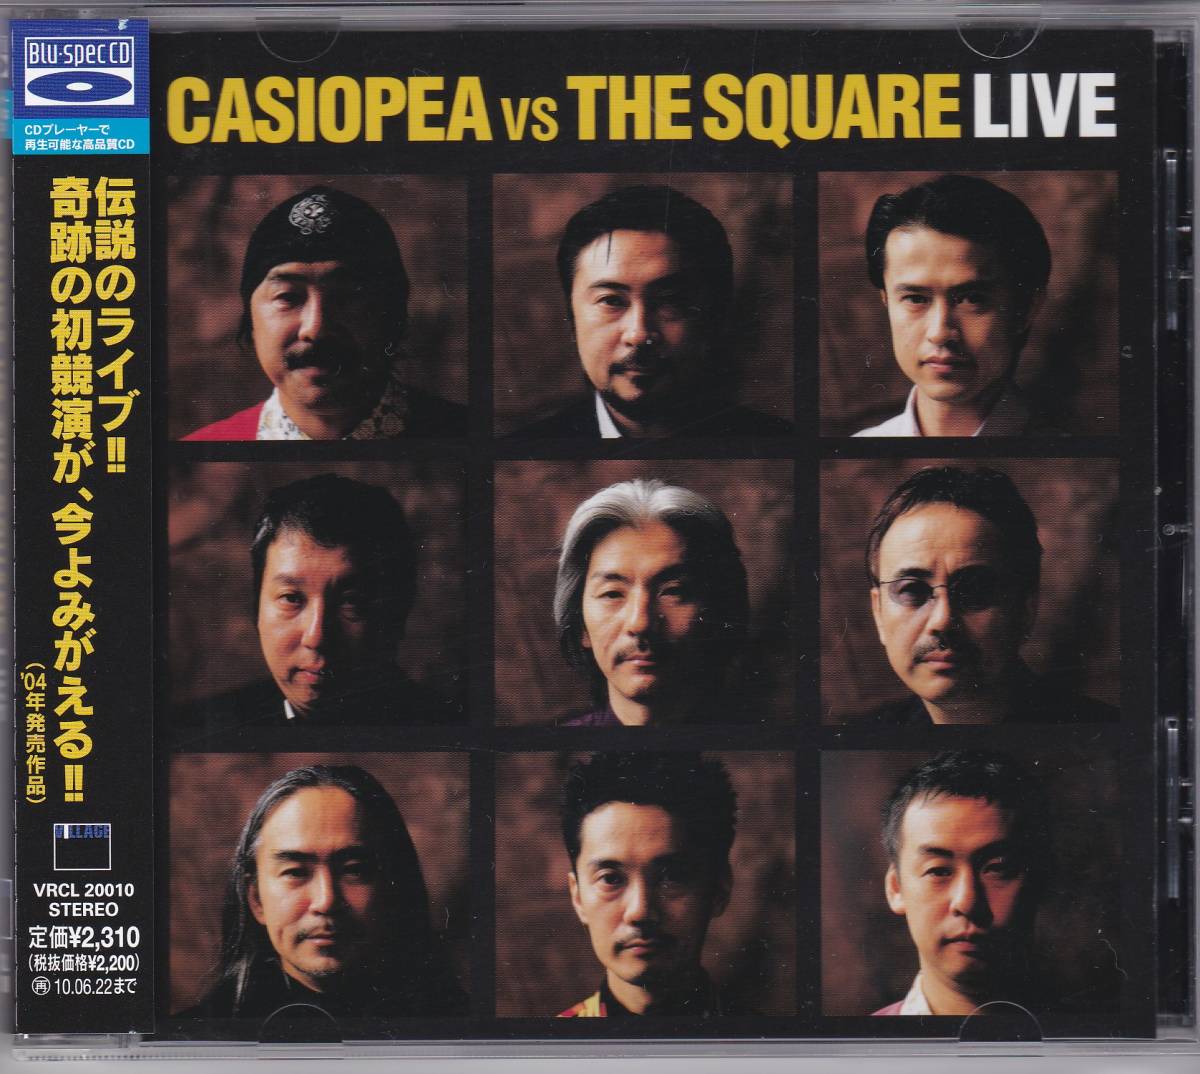 【中古CD】CASIOPEA VS THE SQUARE/LIVE/Blu-spec CD/2009年盤/カシオペア T-スクェア